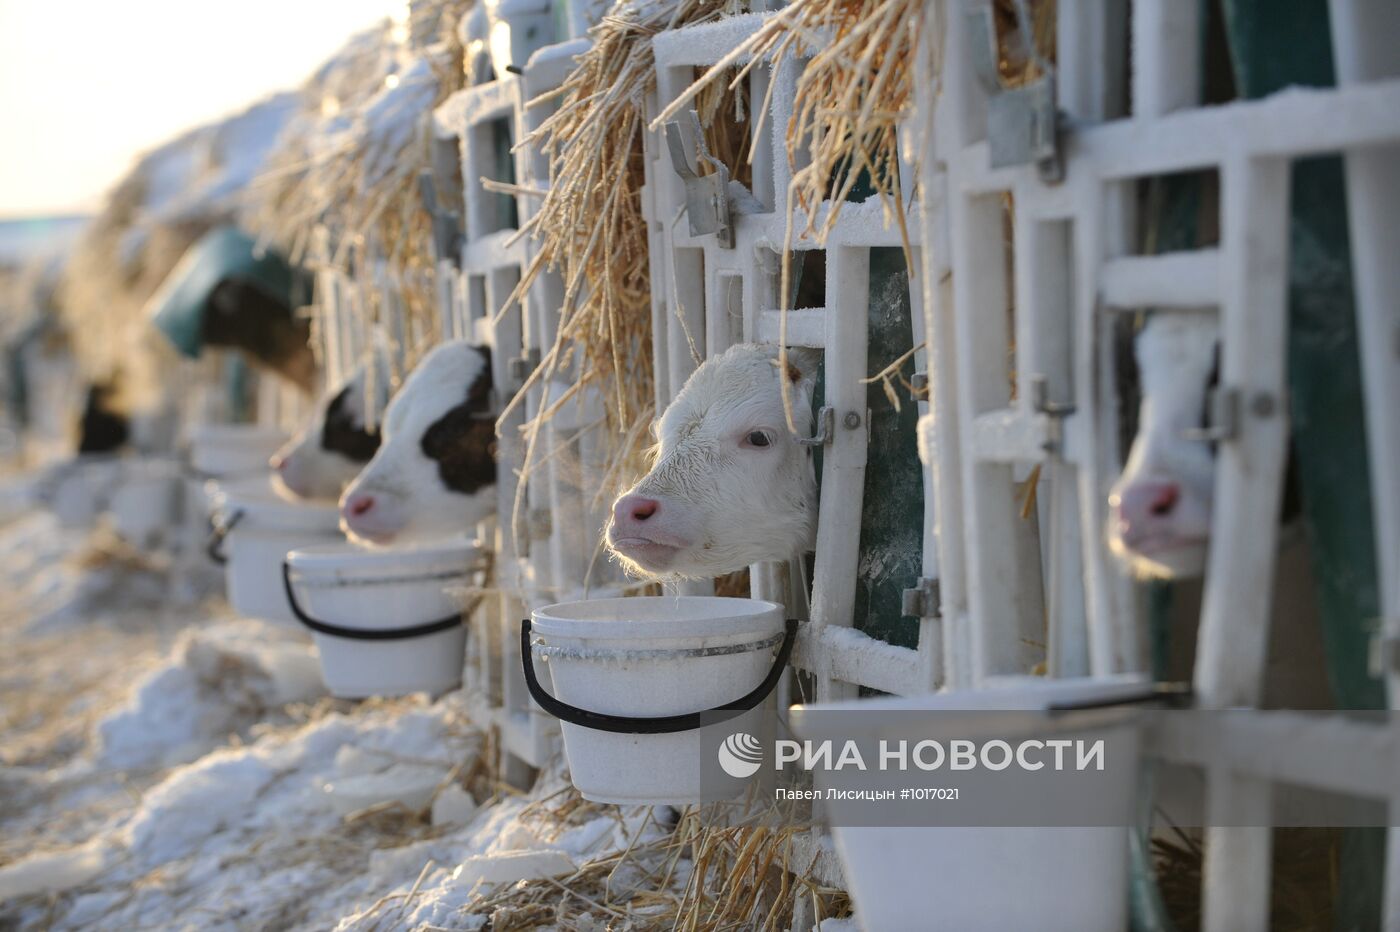 Работа агрофирмы "Патруши" в Свердловской области